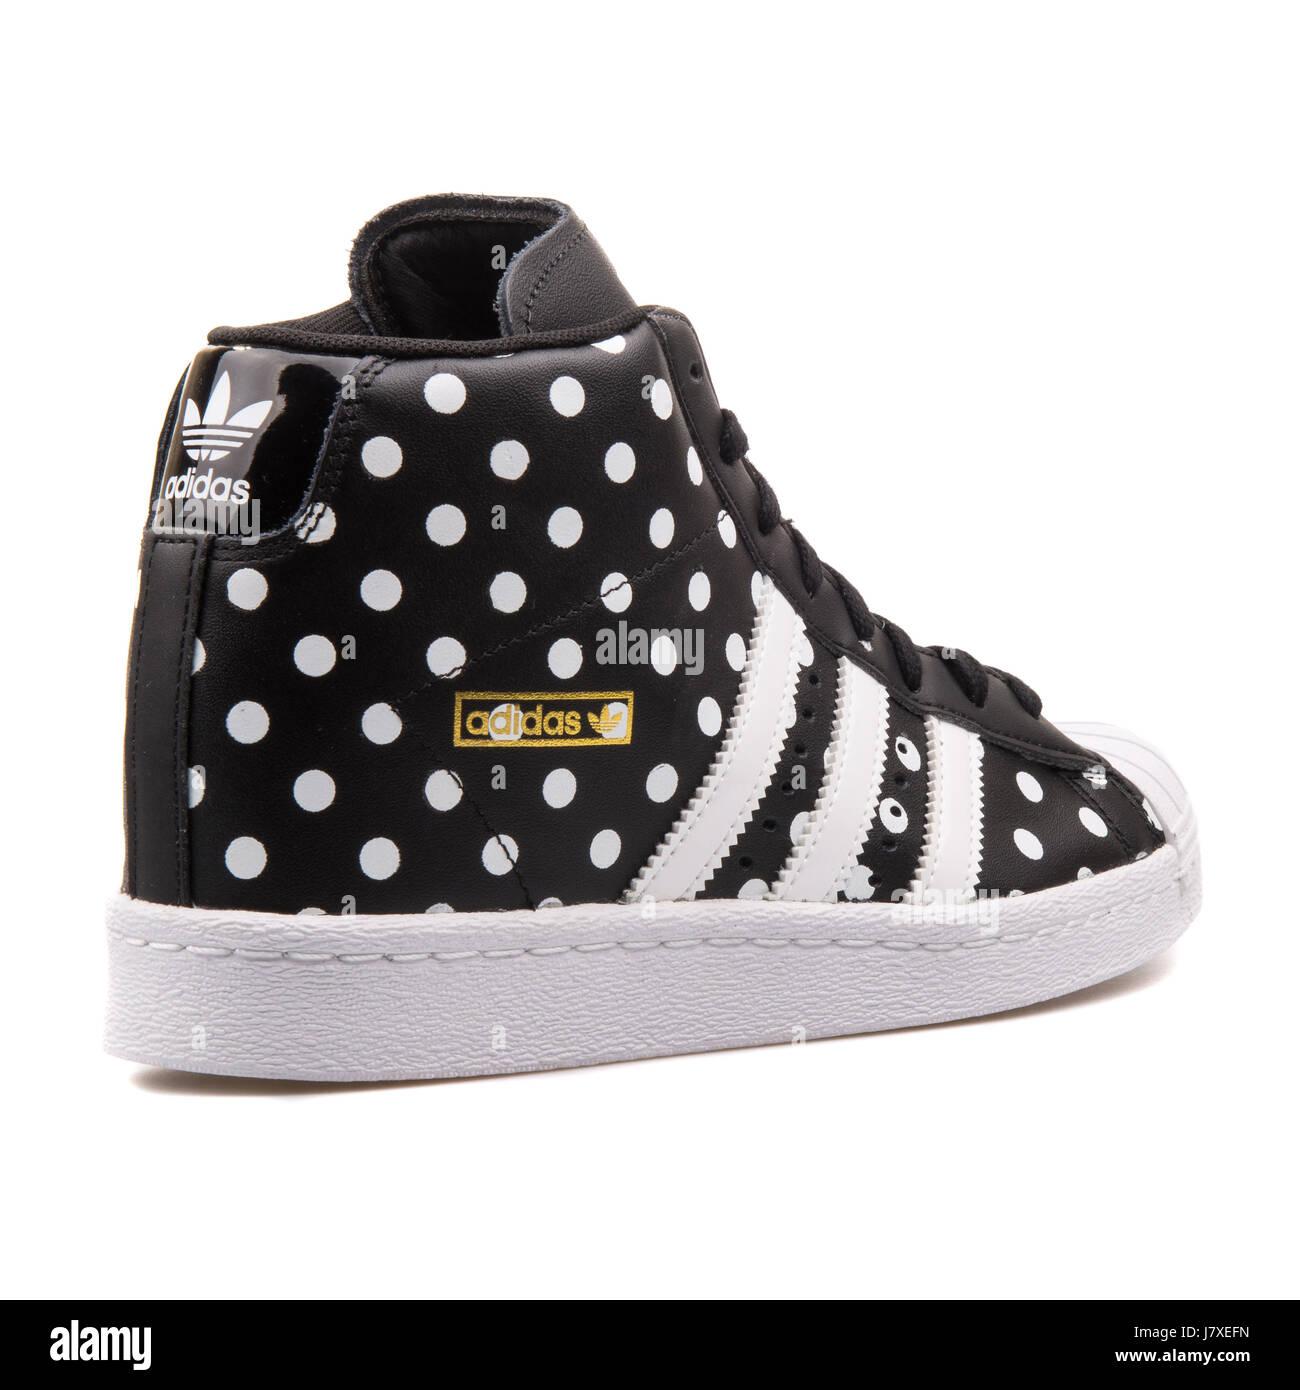 Adidas Superstar W Frauen schwarz mit weißen Punkten Sneakers - S81377  Stockfotografie - Alamy